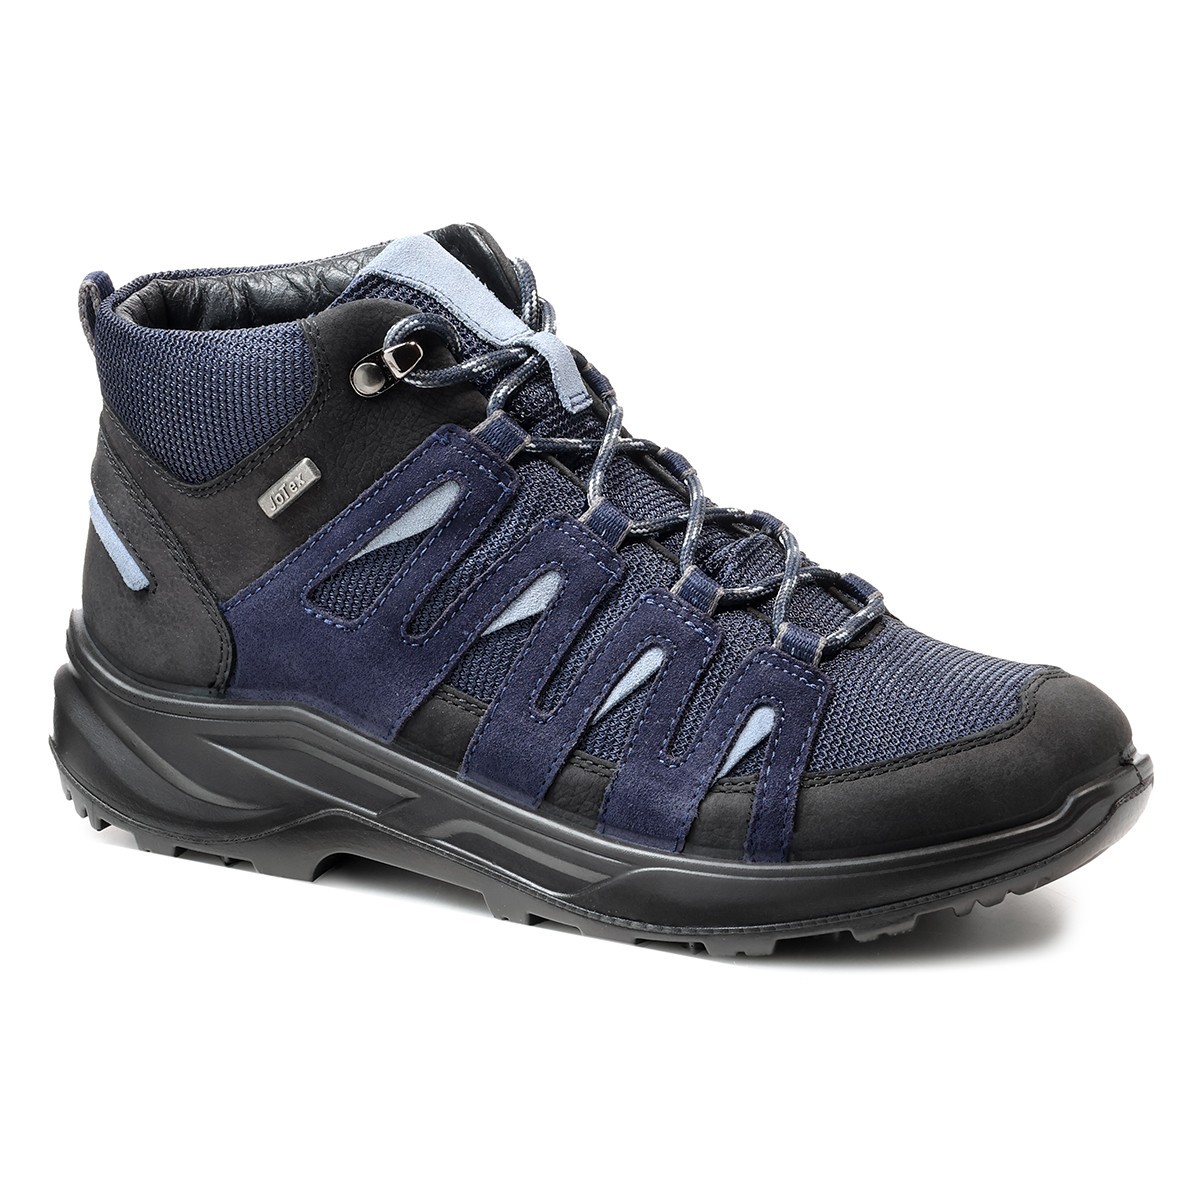 Женские треккинговые ботинки Suvretta, Jomos, синие мужские треккинговые ботинки trekking jomos черные